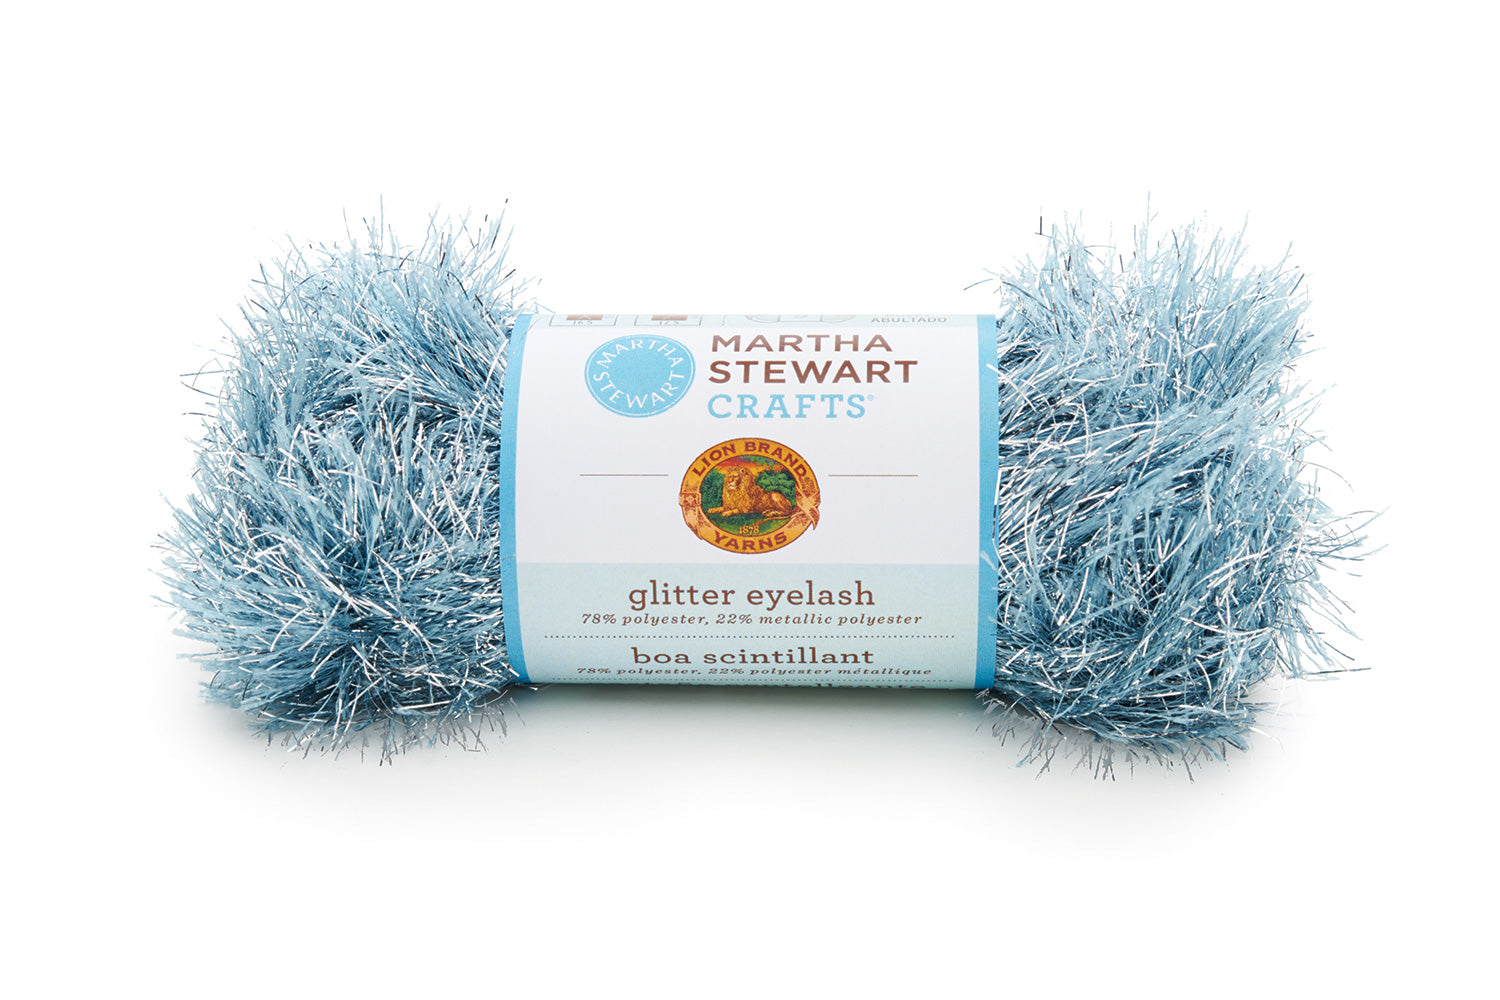 Martha Stewart Crafts® Extra Soft Wool Blend Yarn - Discontinued – Lion  Brand Yarn